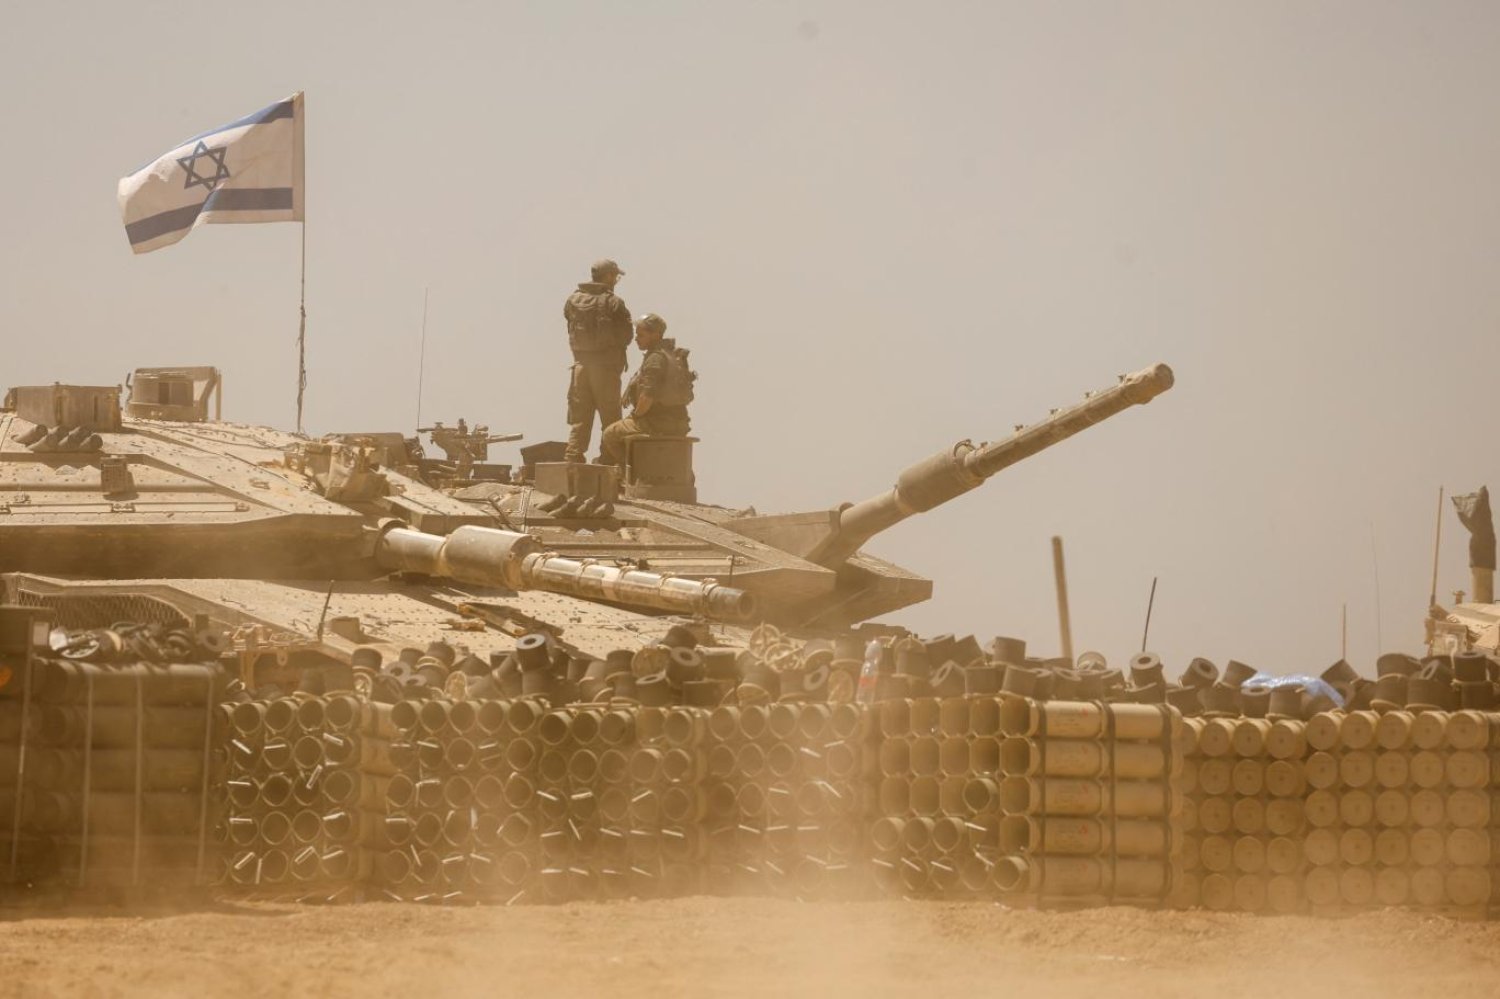 İsrail'in ağır bombardımana tuttuğu Refah'ta yaklaşık 1,5 milyon sivil var (Reuters)